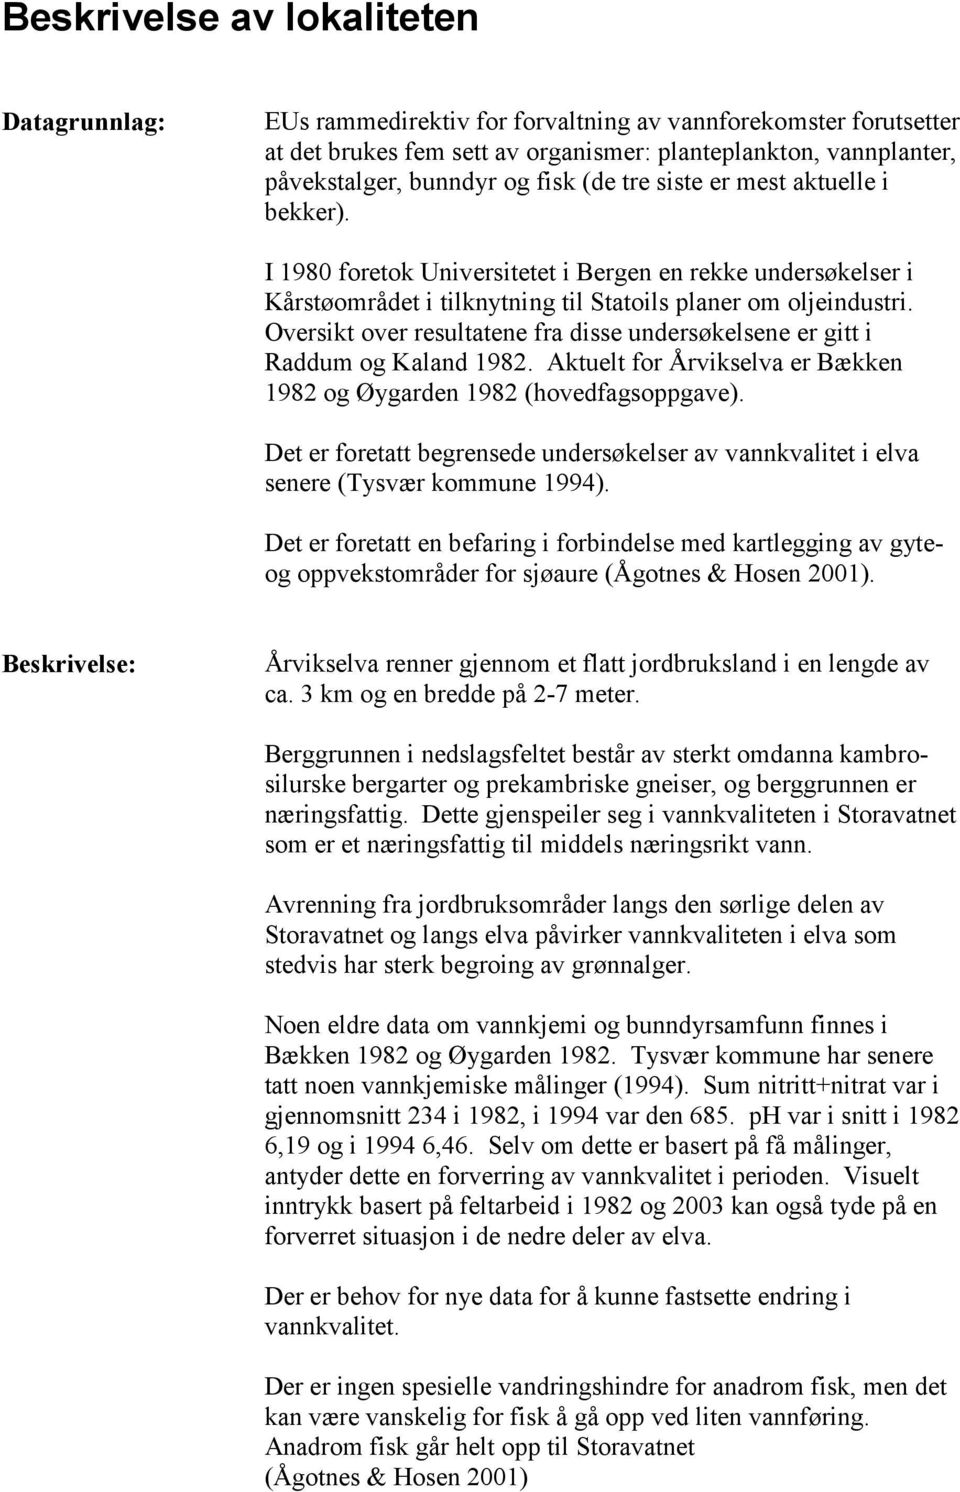 Oversikt over resultatene fra disse undersøkelsene er gitt i Raddum og Kaland 1982. Aktuelt for Årvikselva er Bækken 1982 og Øygarden 1982 (hovedfagsoppgave).